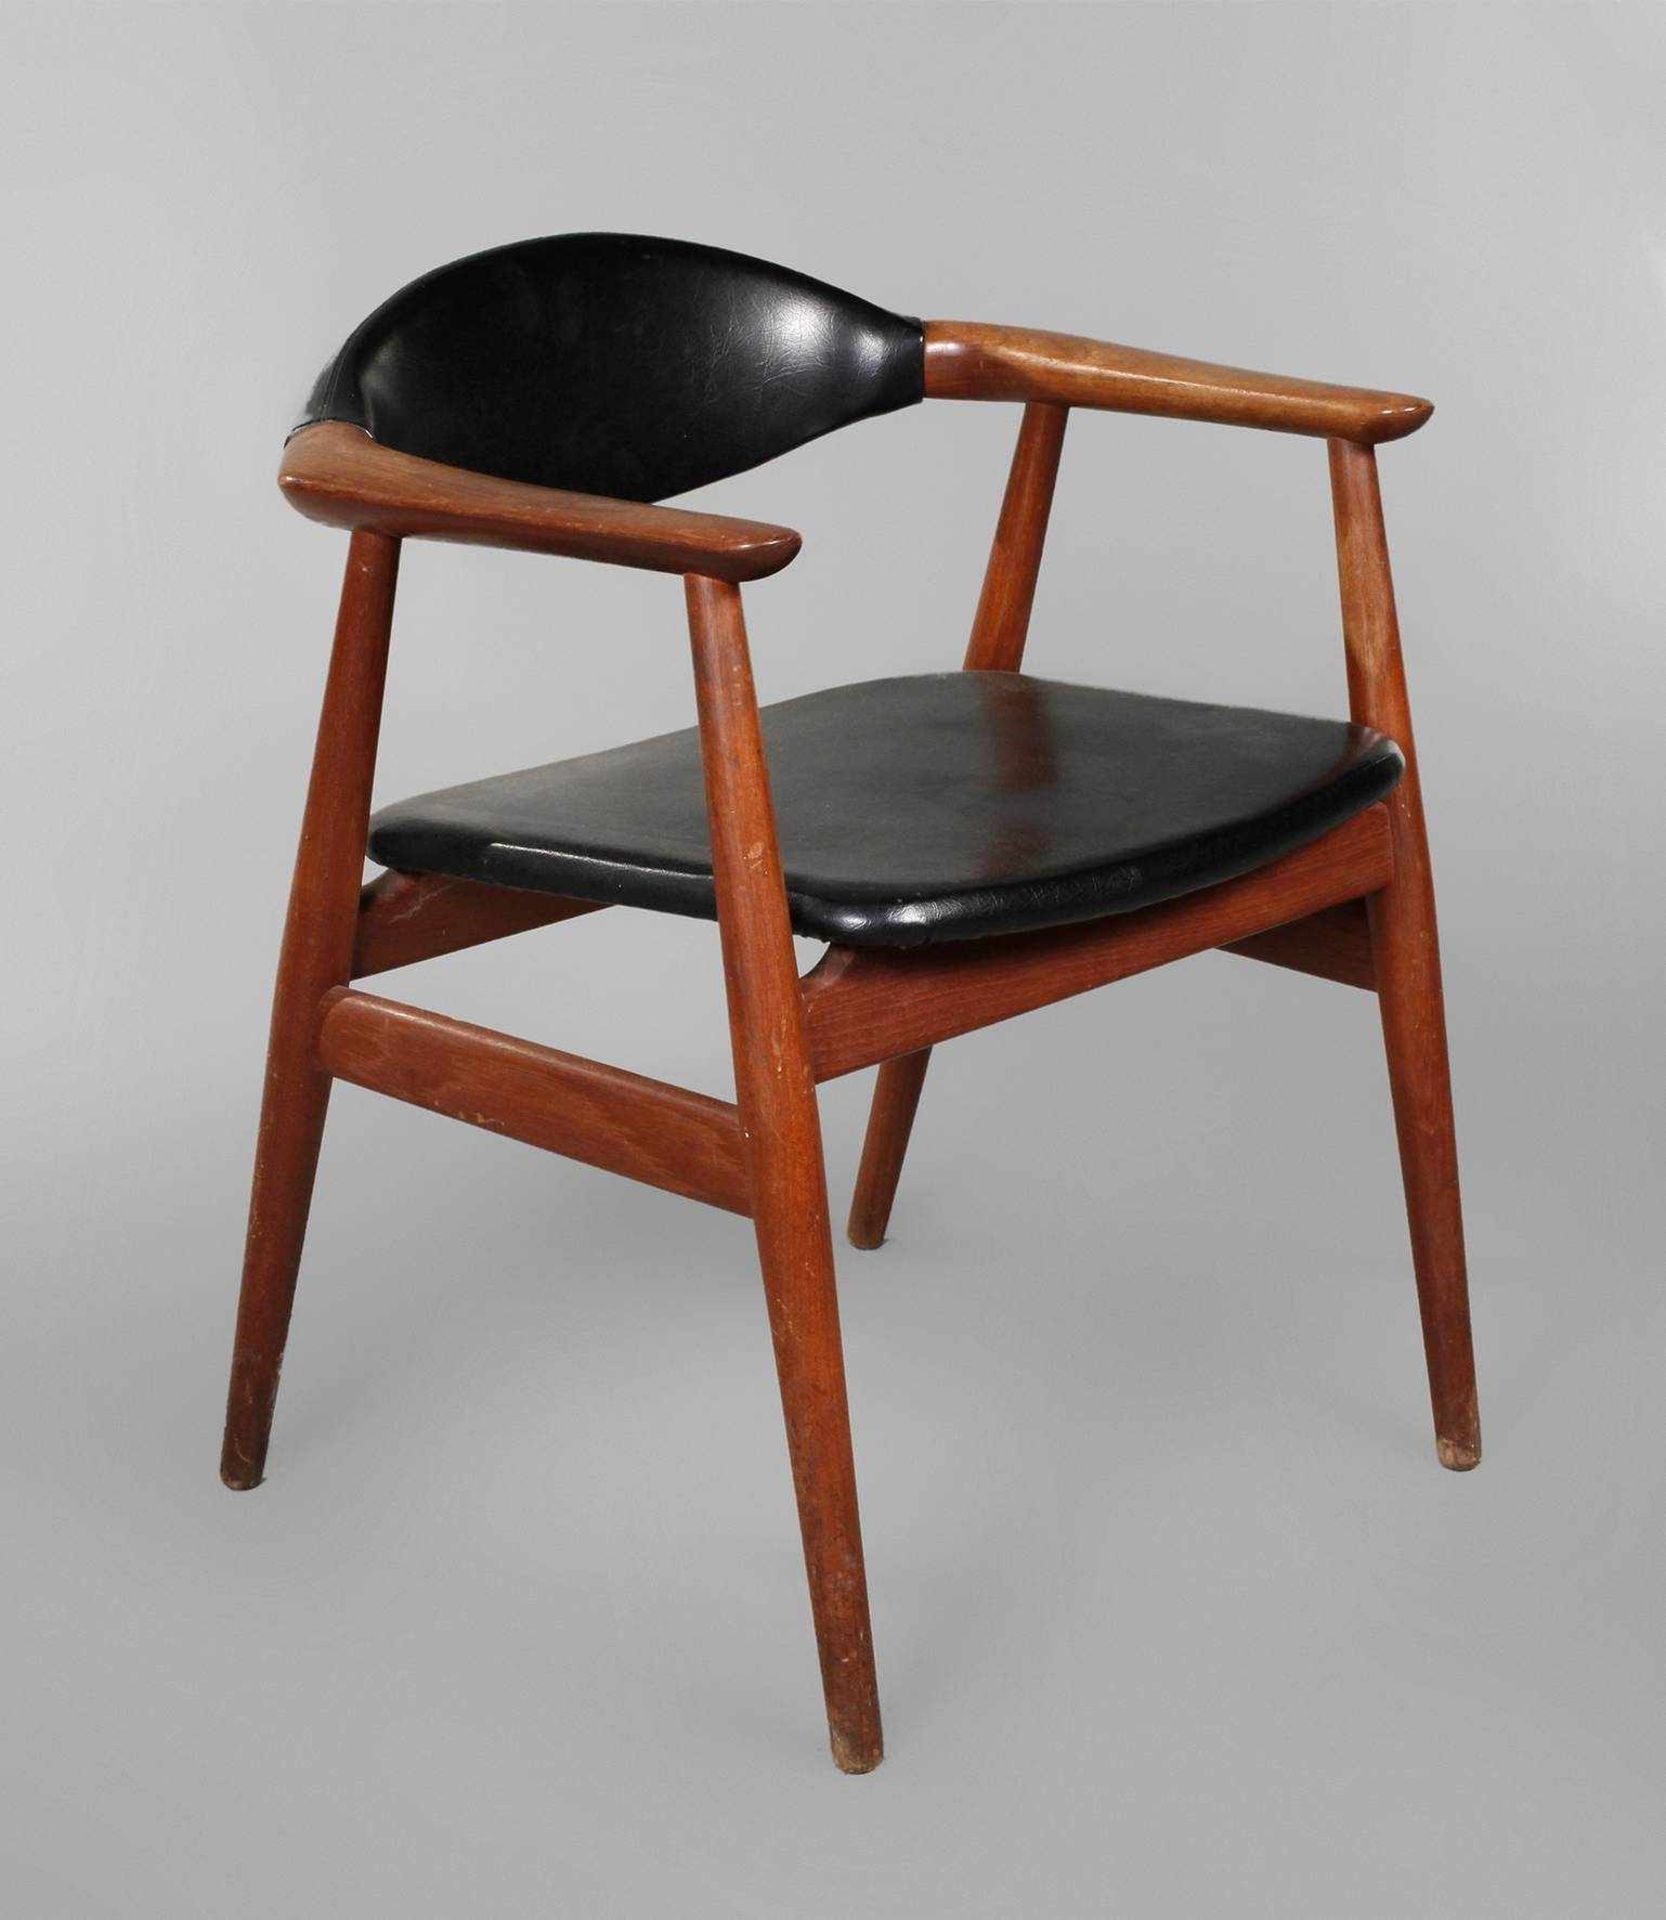 Armlehnstuhl Teakholz1960er Jahre, Sitzfläche mit Klebeetikett Danish Furniture Makers, originaler